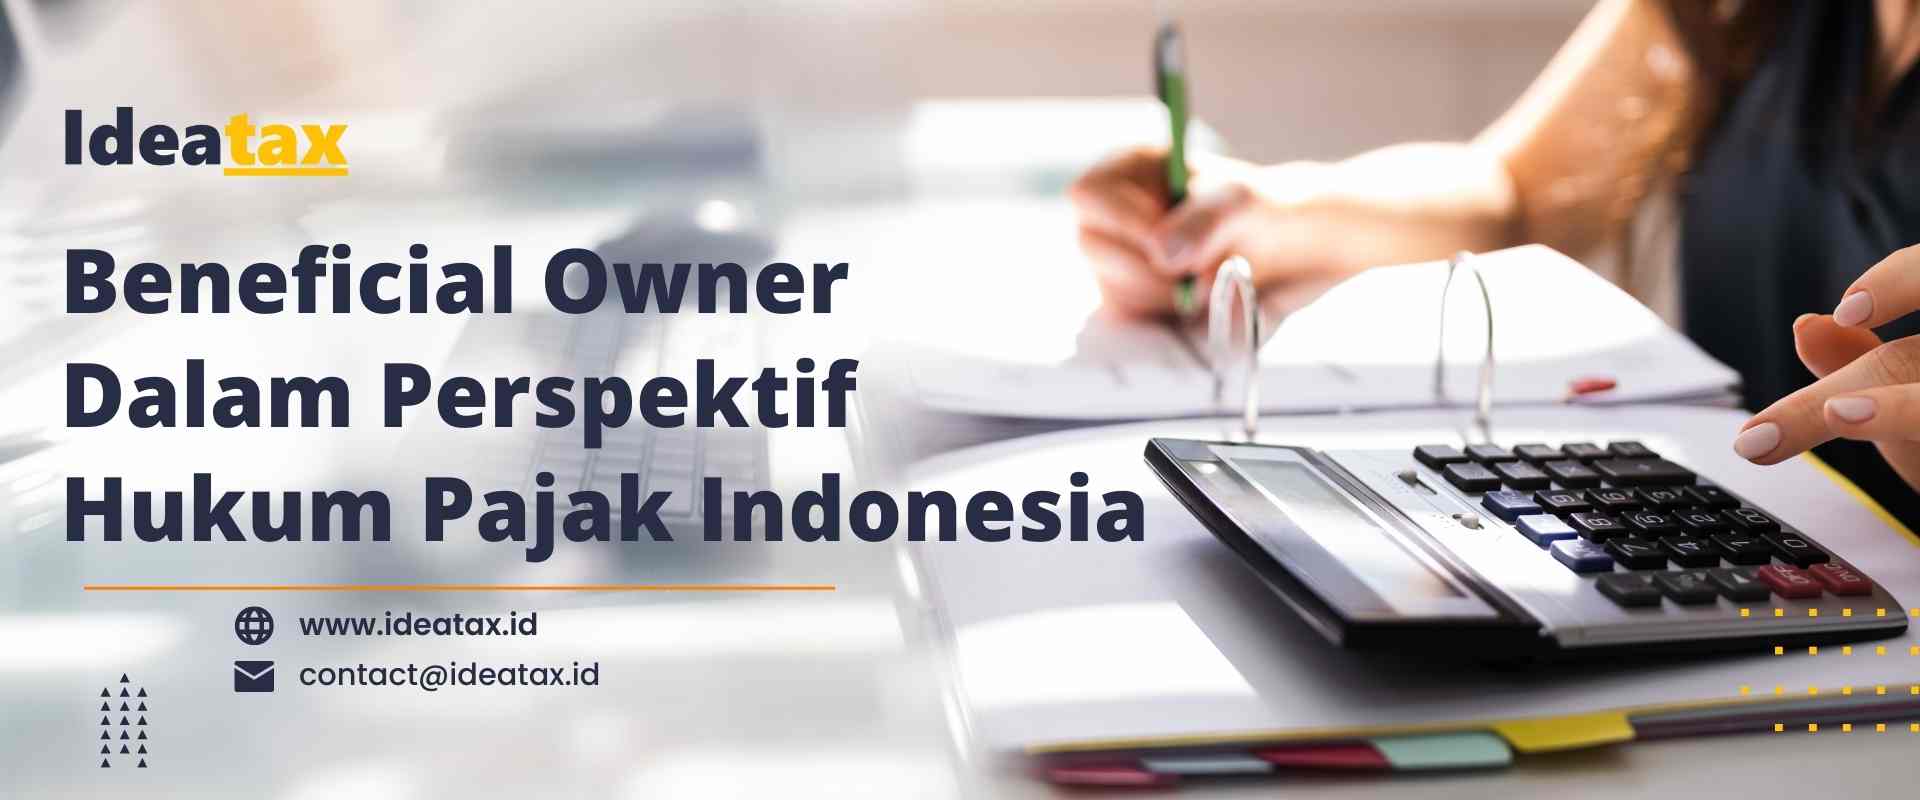 Beneficial Owner Dalam Perspektif Hukum Pajak Indonesia